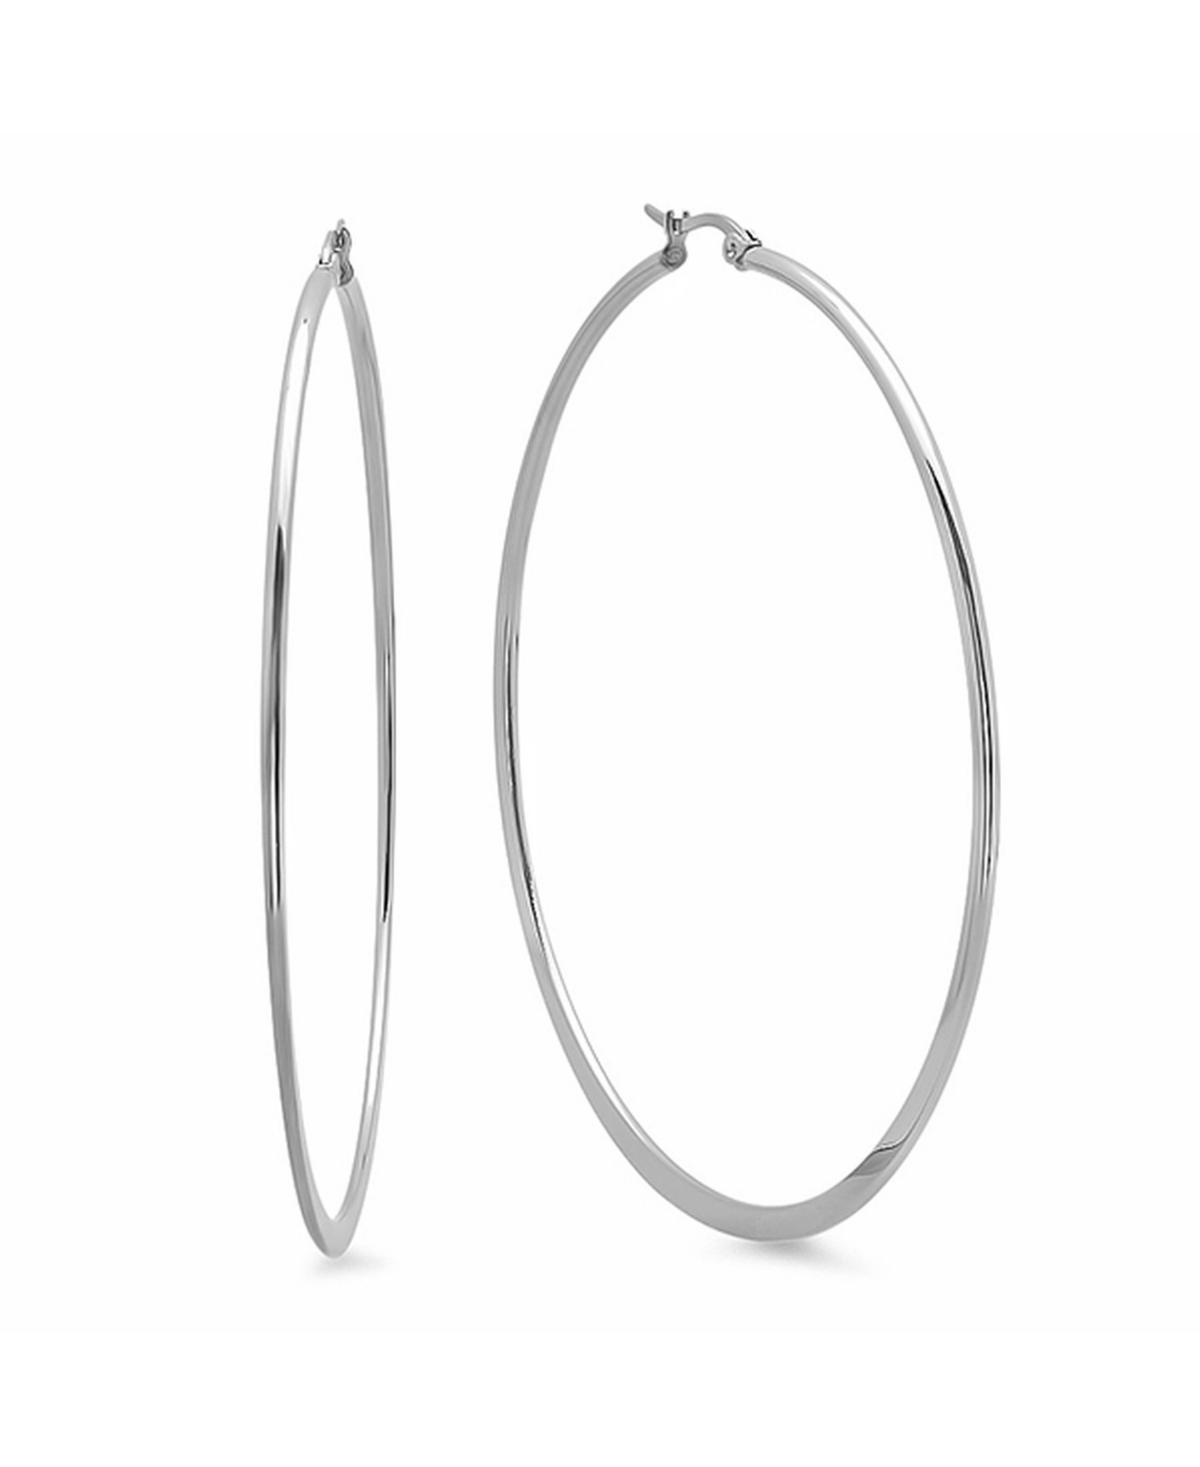 Stainless Steel Hoop Earrings - Silver-Plated